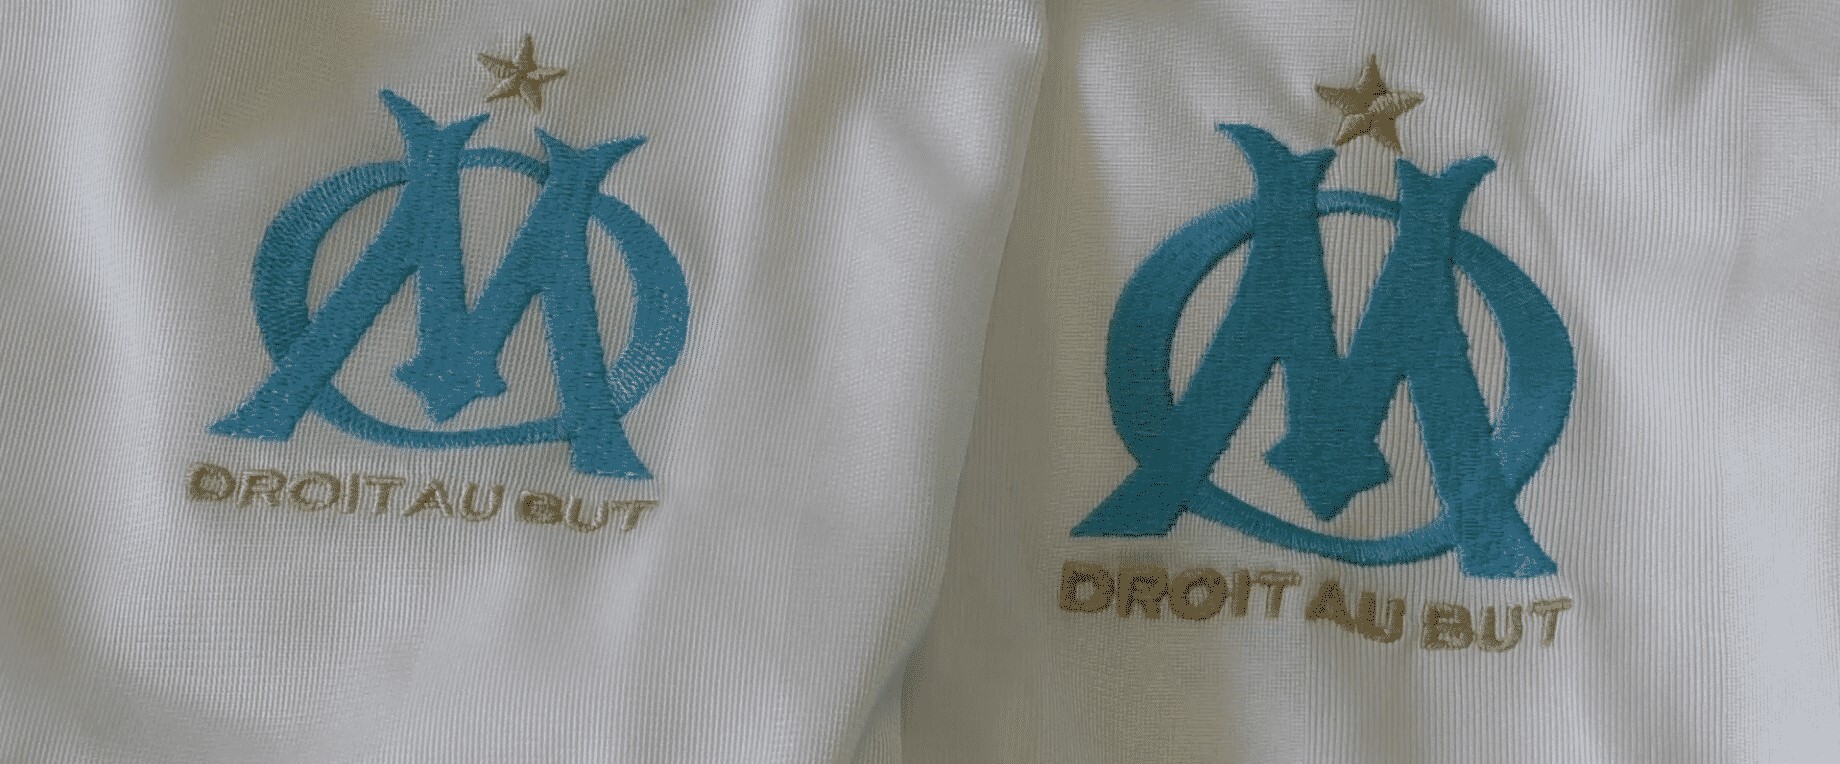 authentique vs contrefacon logo maillot de foot Marseille